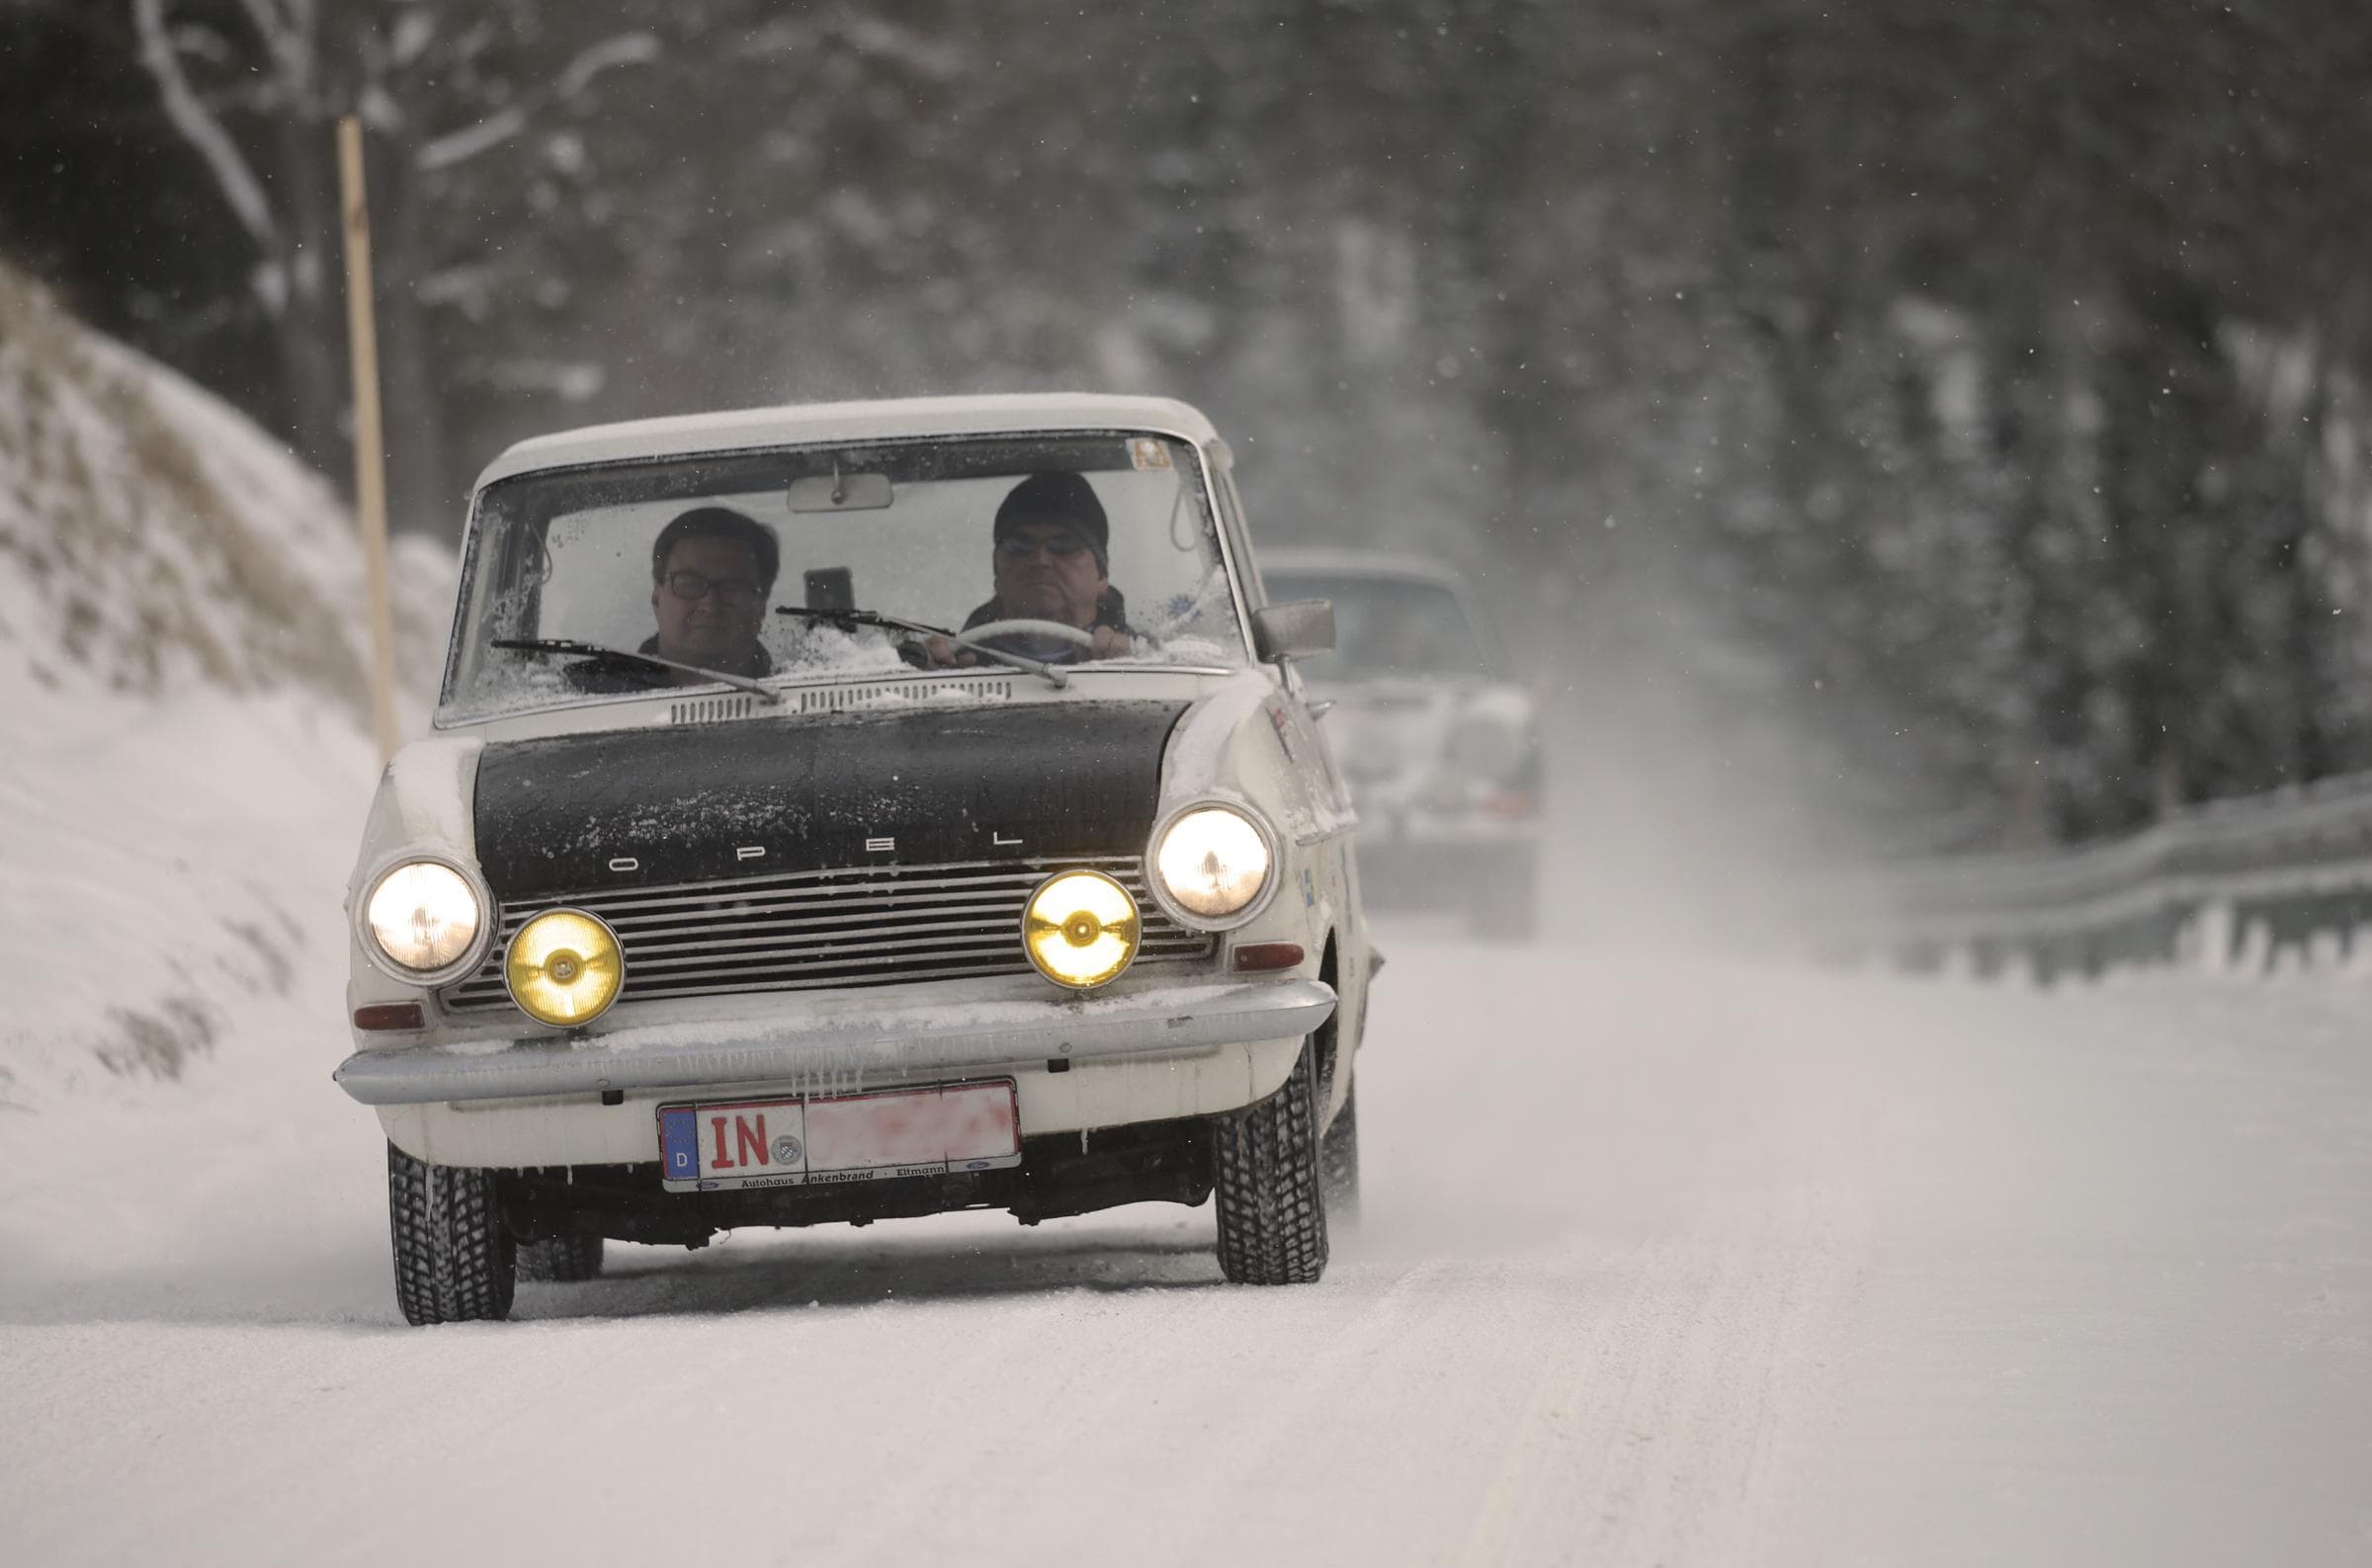 Oldtimer im Winter fahren: Risiken und Tipps